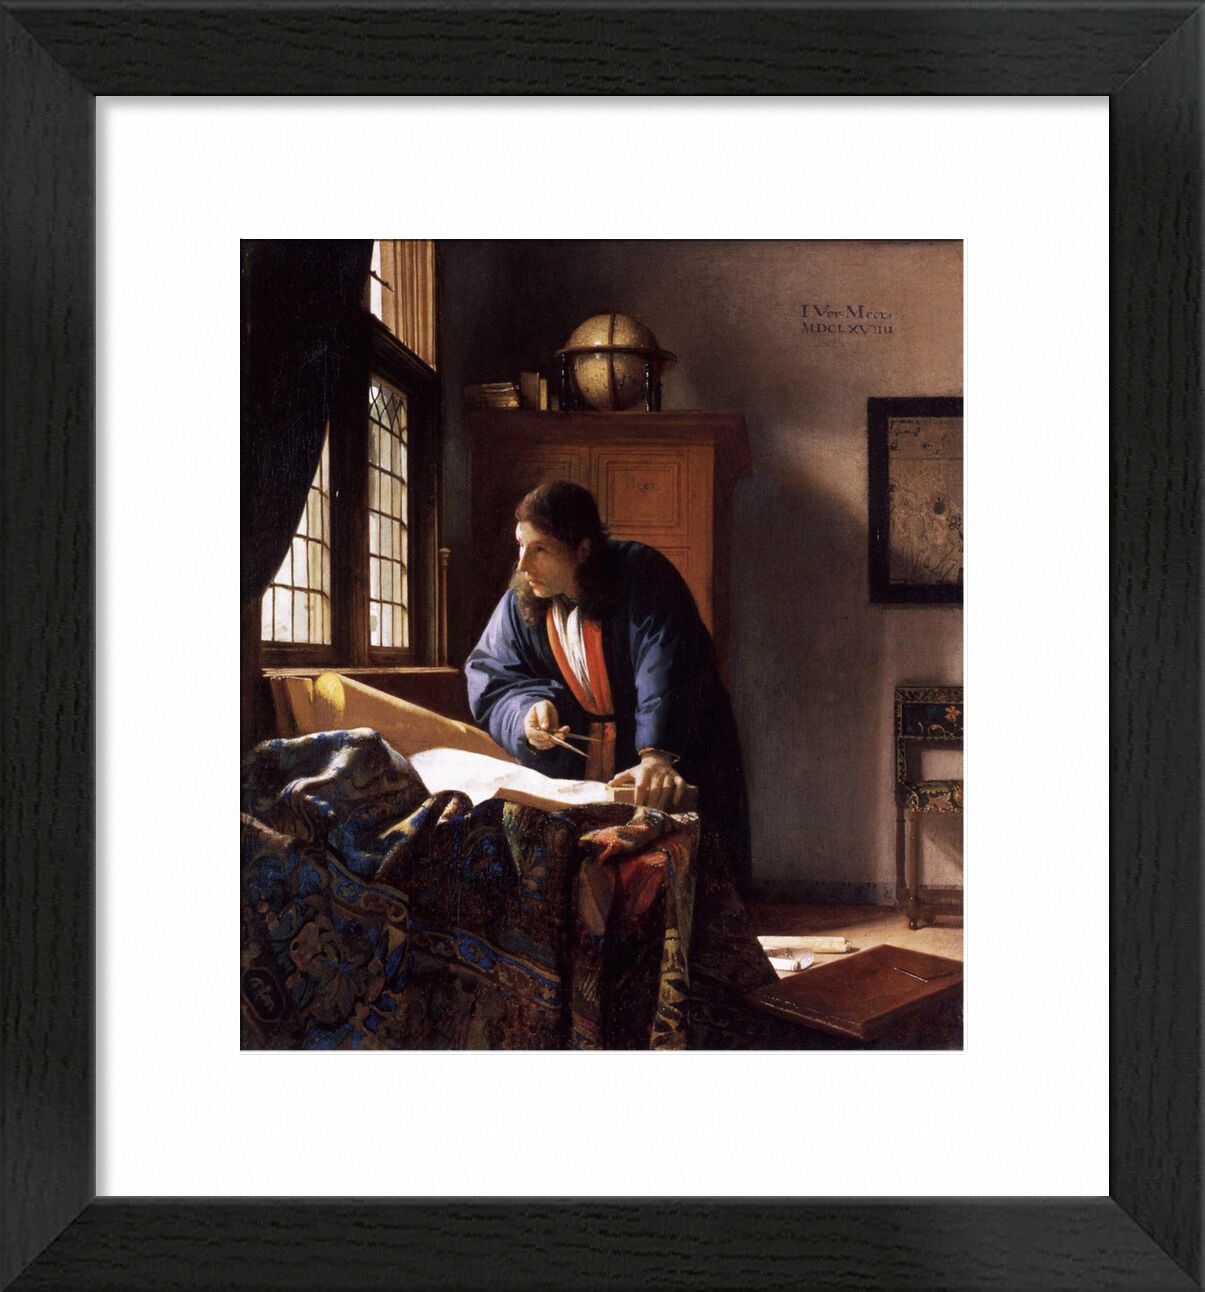 The Geographer - Vermeer von Bildende Kunst, Prodi Art, Architekt, geograph, Vermeer; johannes Vermeer, arbeiten, Porträt